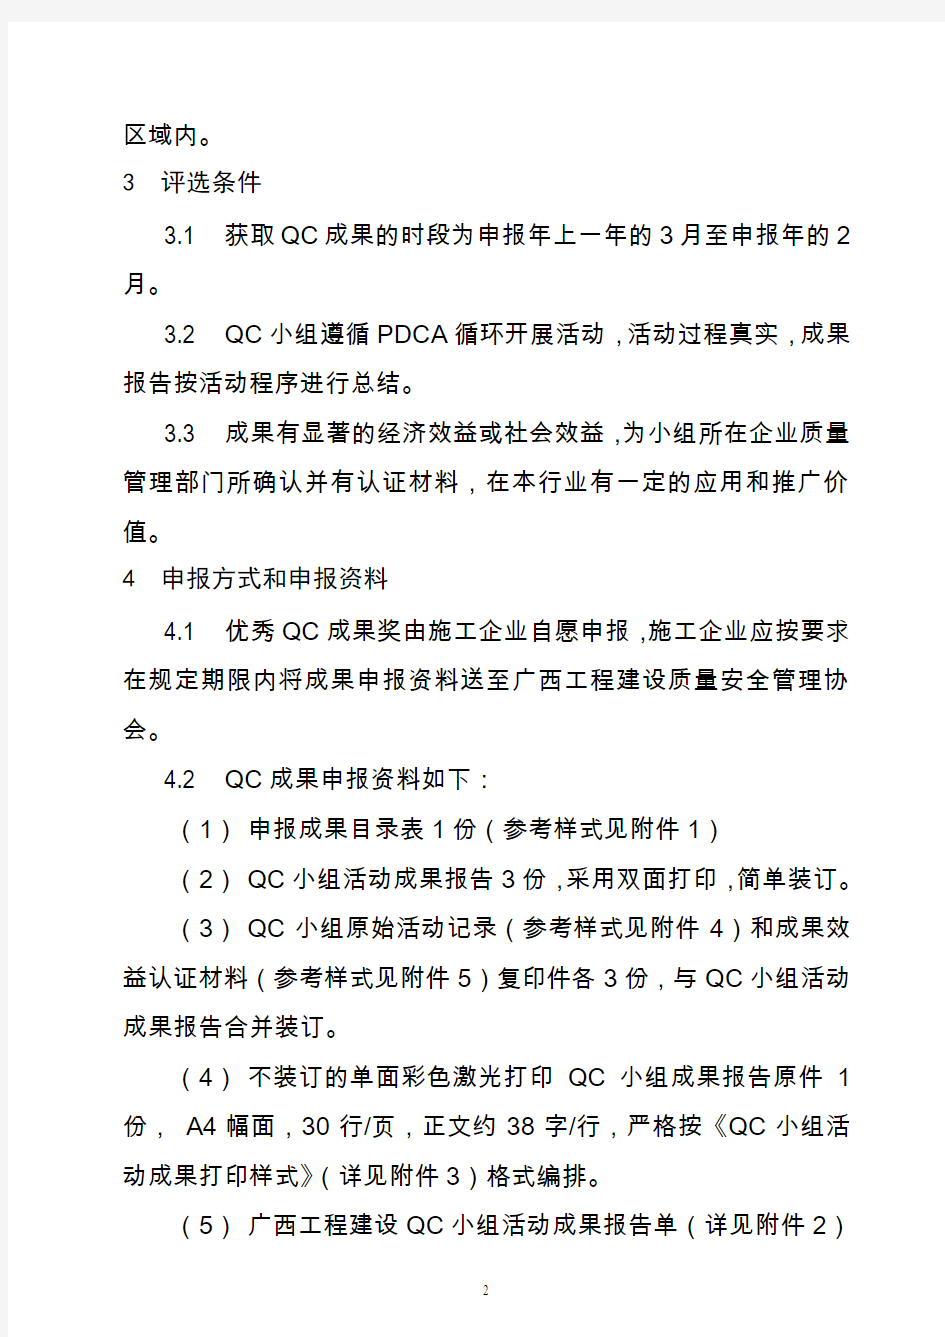 广西工程建设优秀QC小组活动成果评选管理办法2014版资料